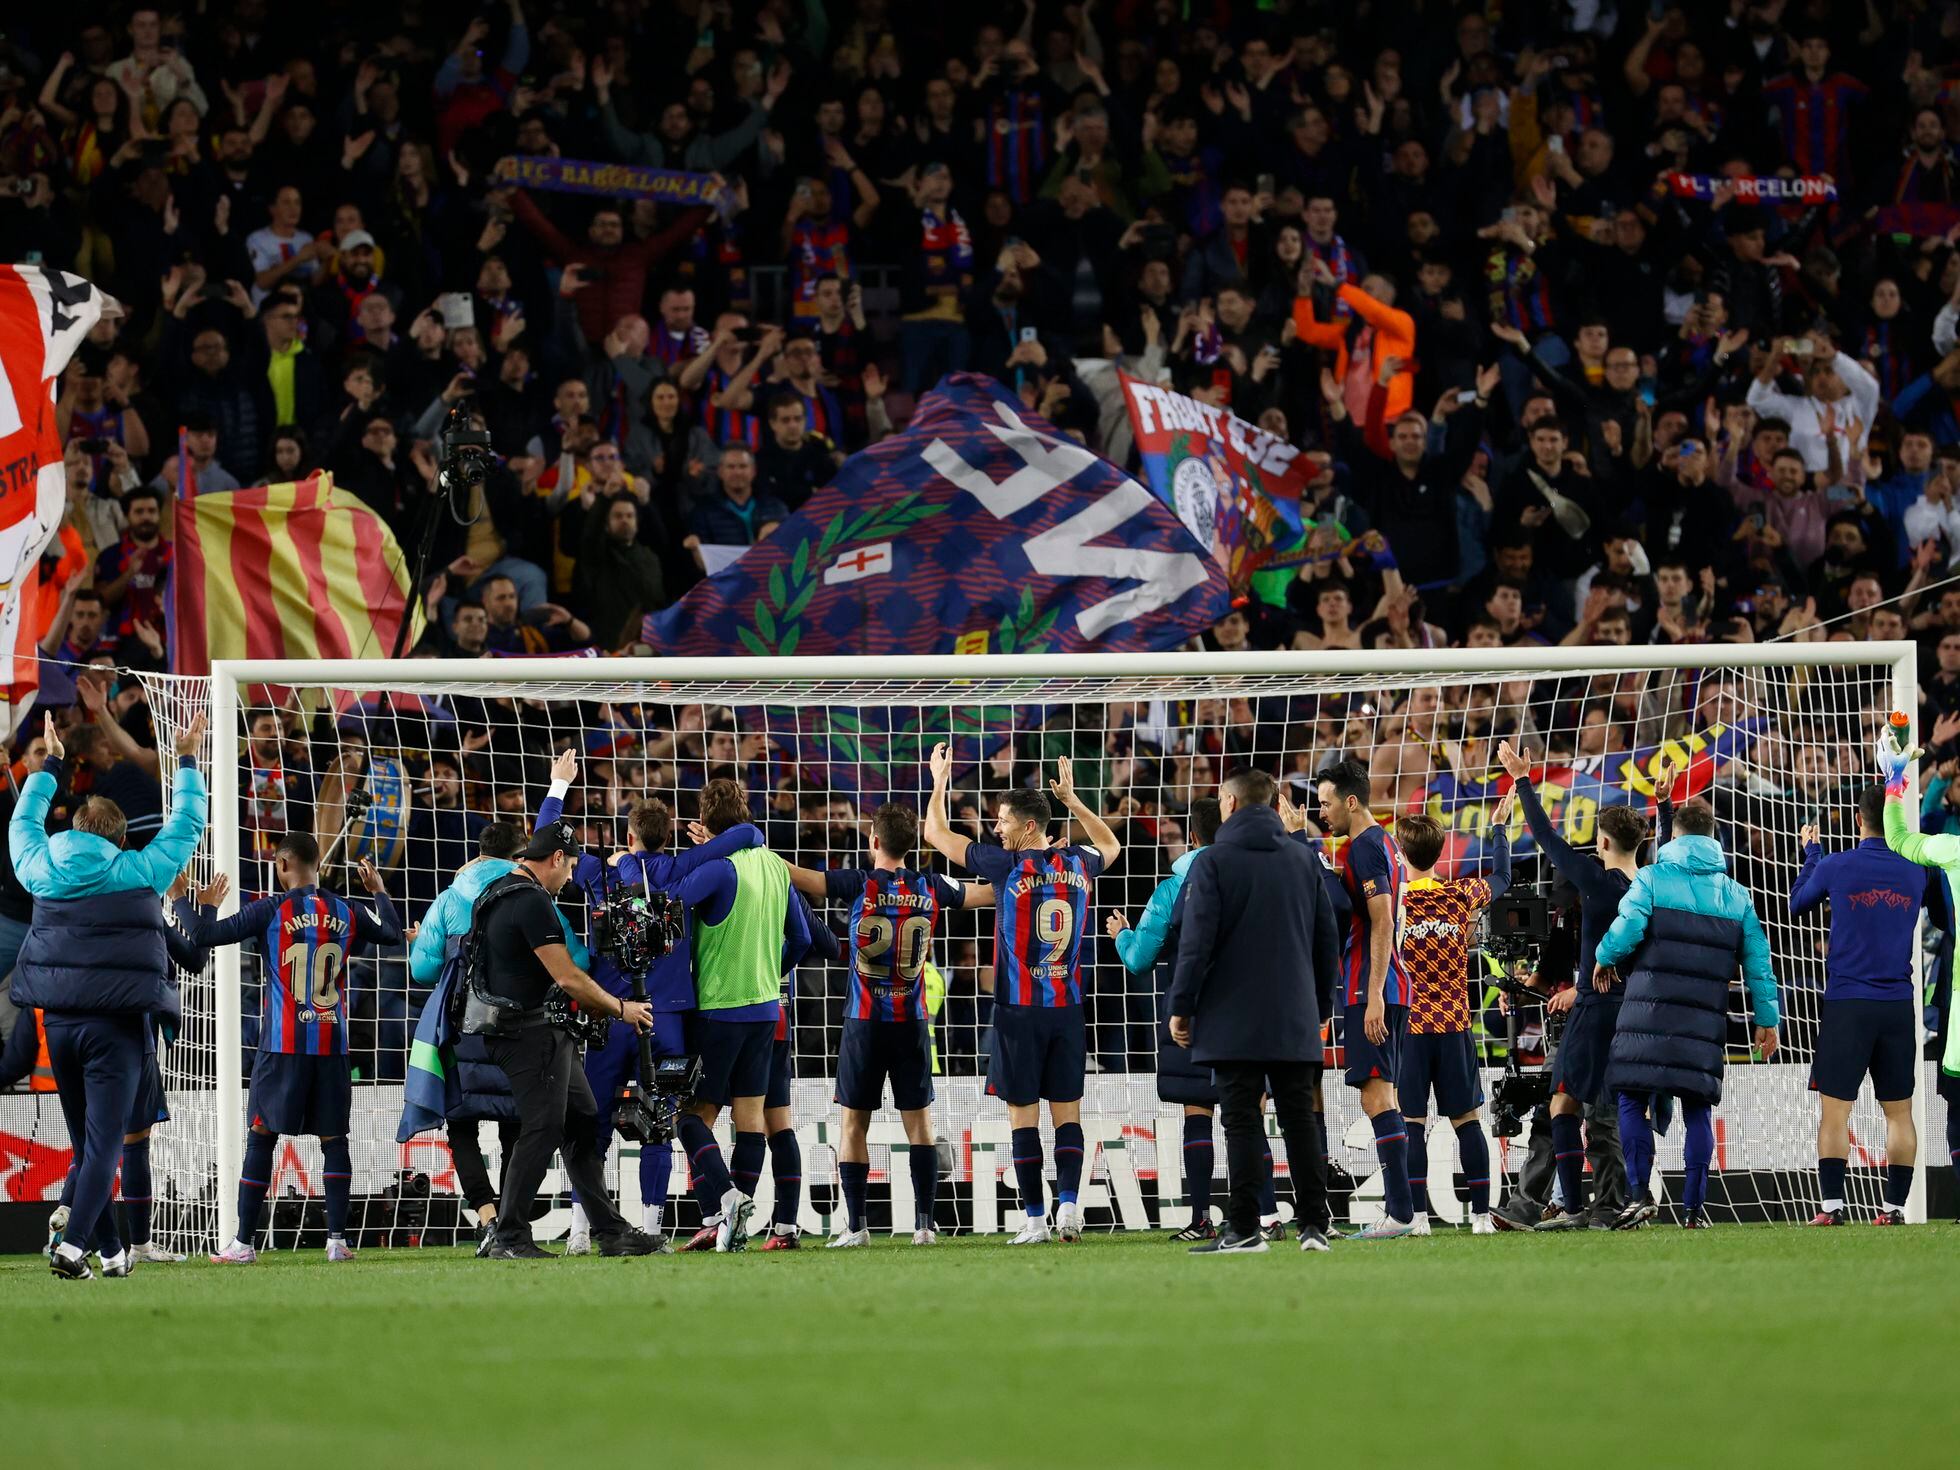 Real Sociedad - Barcelona, fútbol en directo: Araujo da el triunfo al Barça  con un gol en el descuento